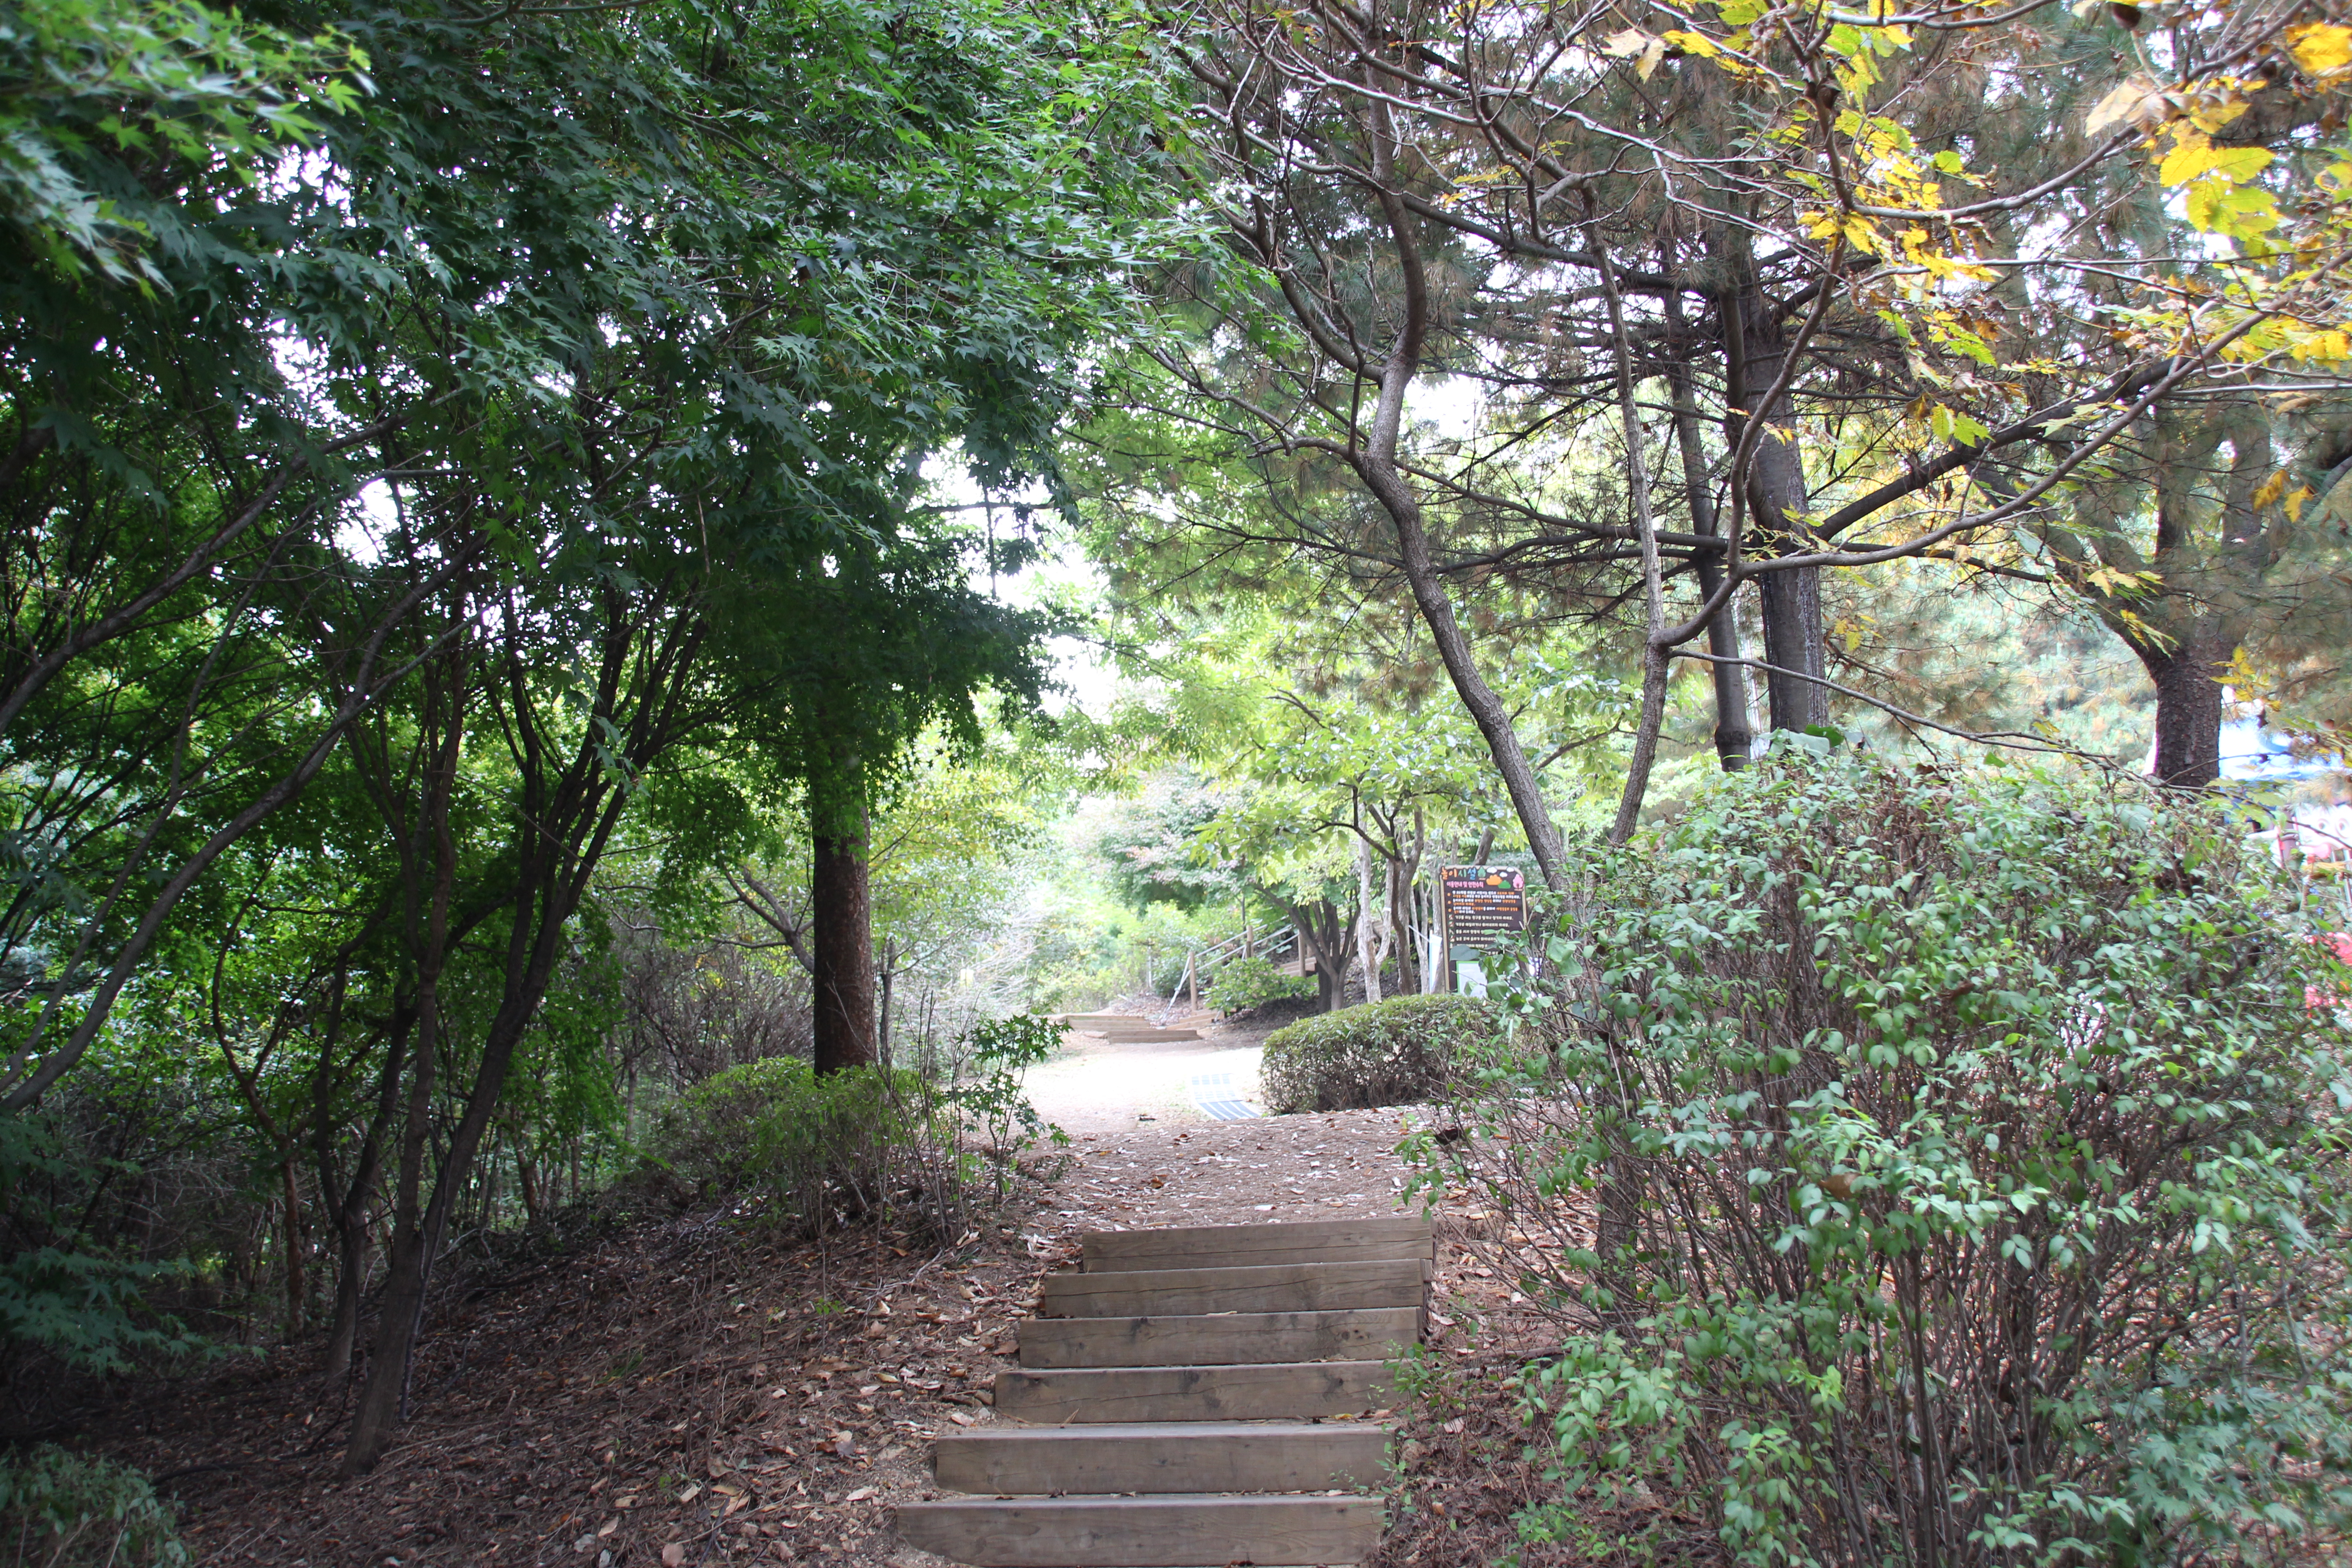  경기도 부천시에 위치한 산새공원의 모습 